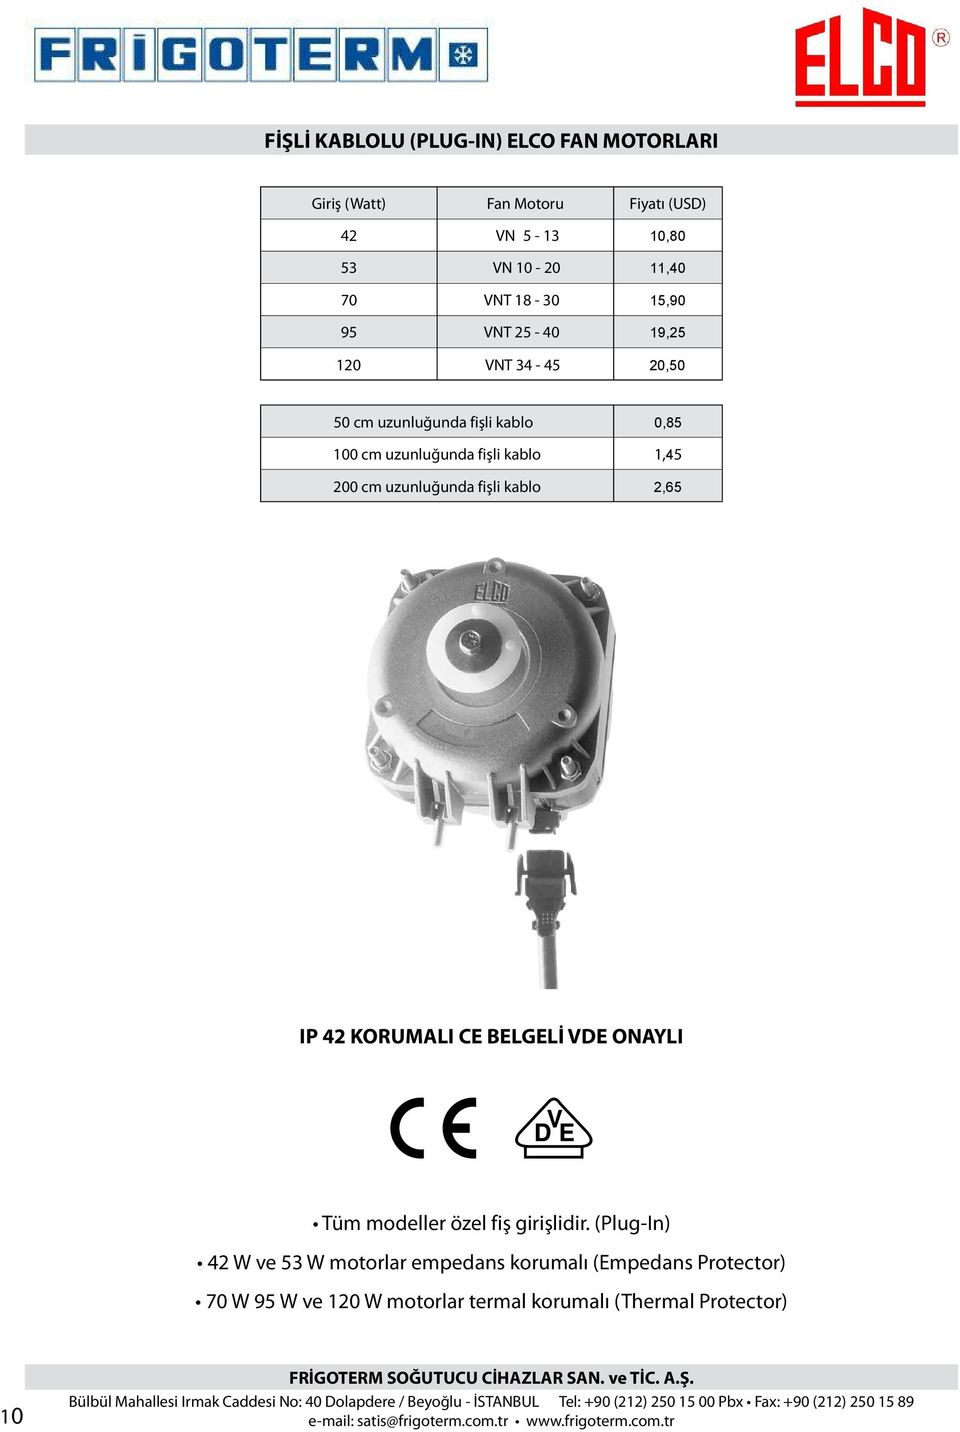 (Plug-In) 42 W ve 53 W motorlar empedans korumalı (Empedans Protector) 70 W 95 W ve 120 W motorlar termal korumalı (Thermal Protector) 10 FRİGOTERM SOĞUTUCU CİHAZLAR SAN.